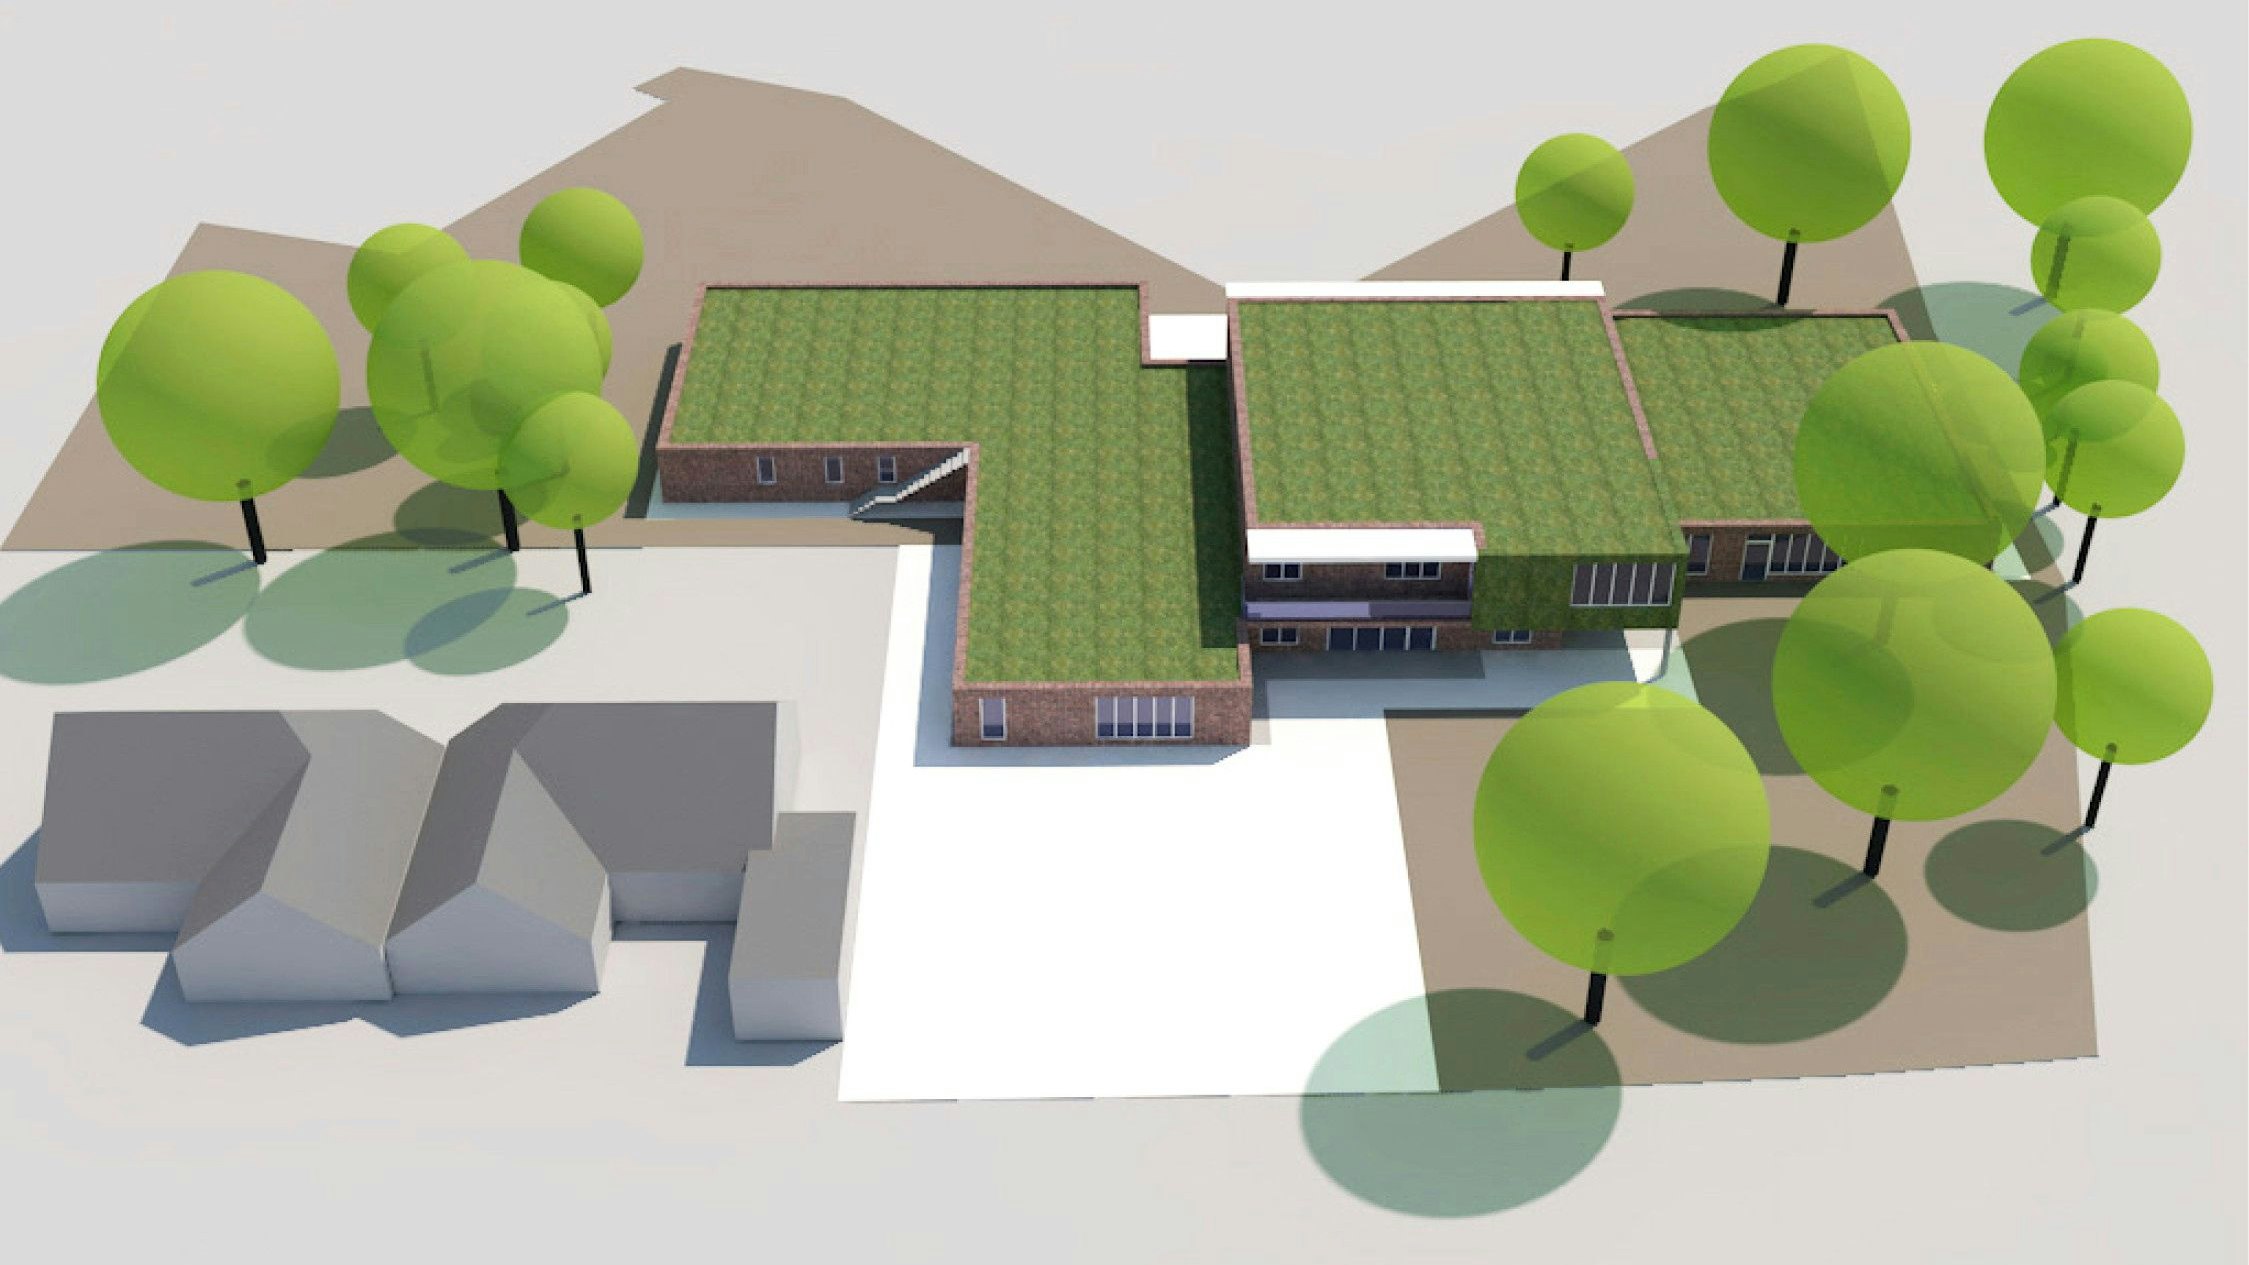 Eingebettet in die grüne Umgebung: So soll die neue Kindertagesstätte in der Wiek aussehen. Grafik: Thalen Consult